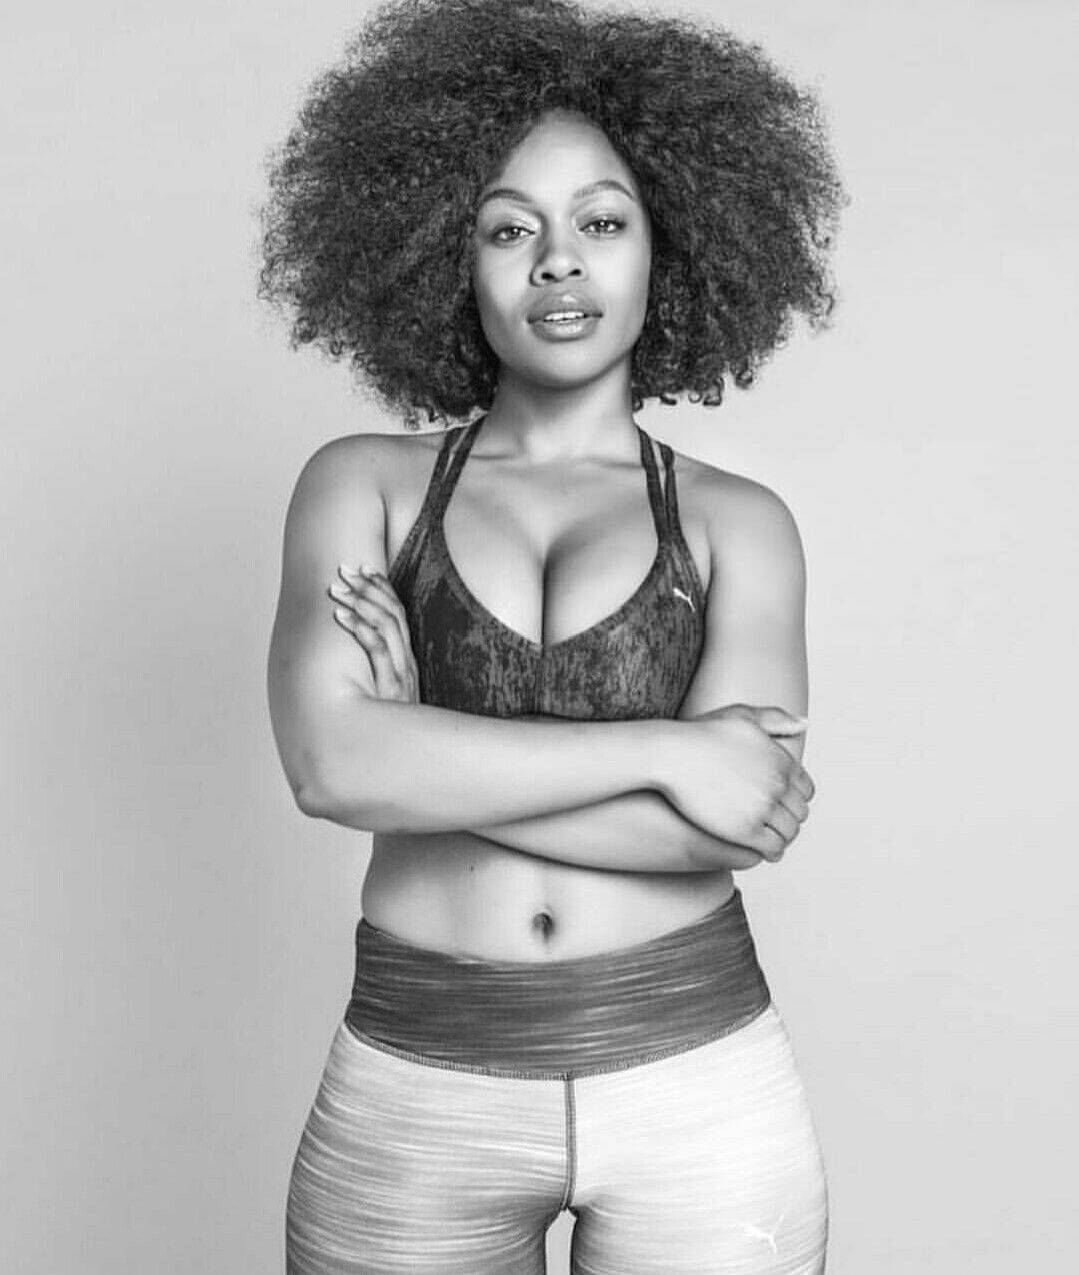 Haarigefrau Mit Afrolocken Und Sportbekleidung Wallpaper